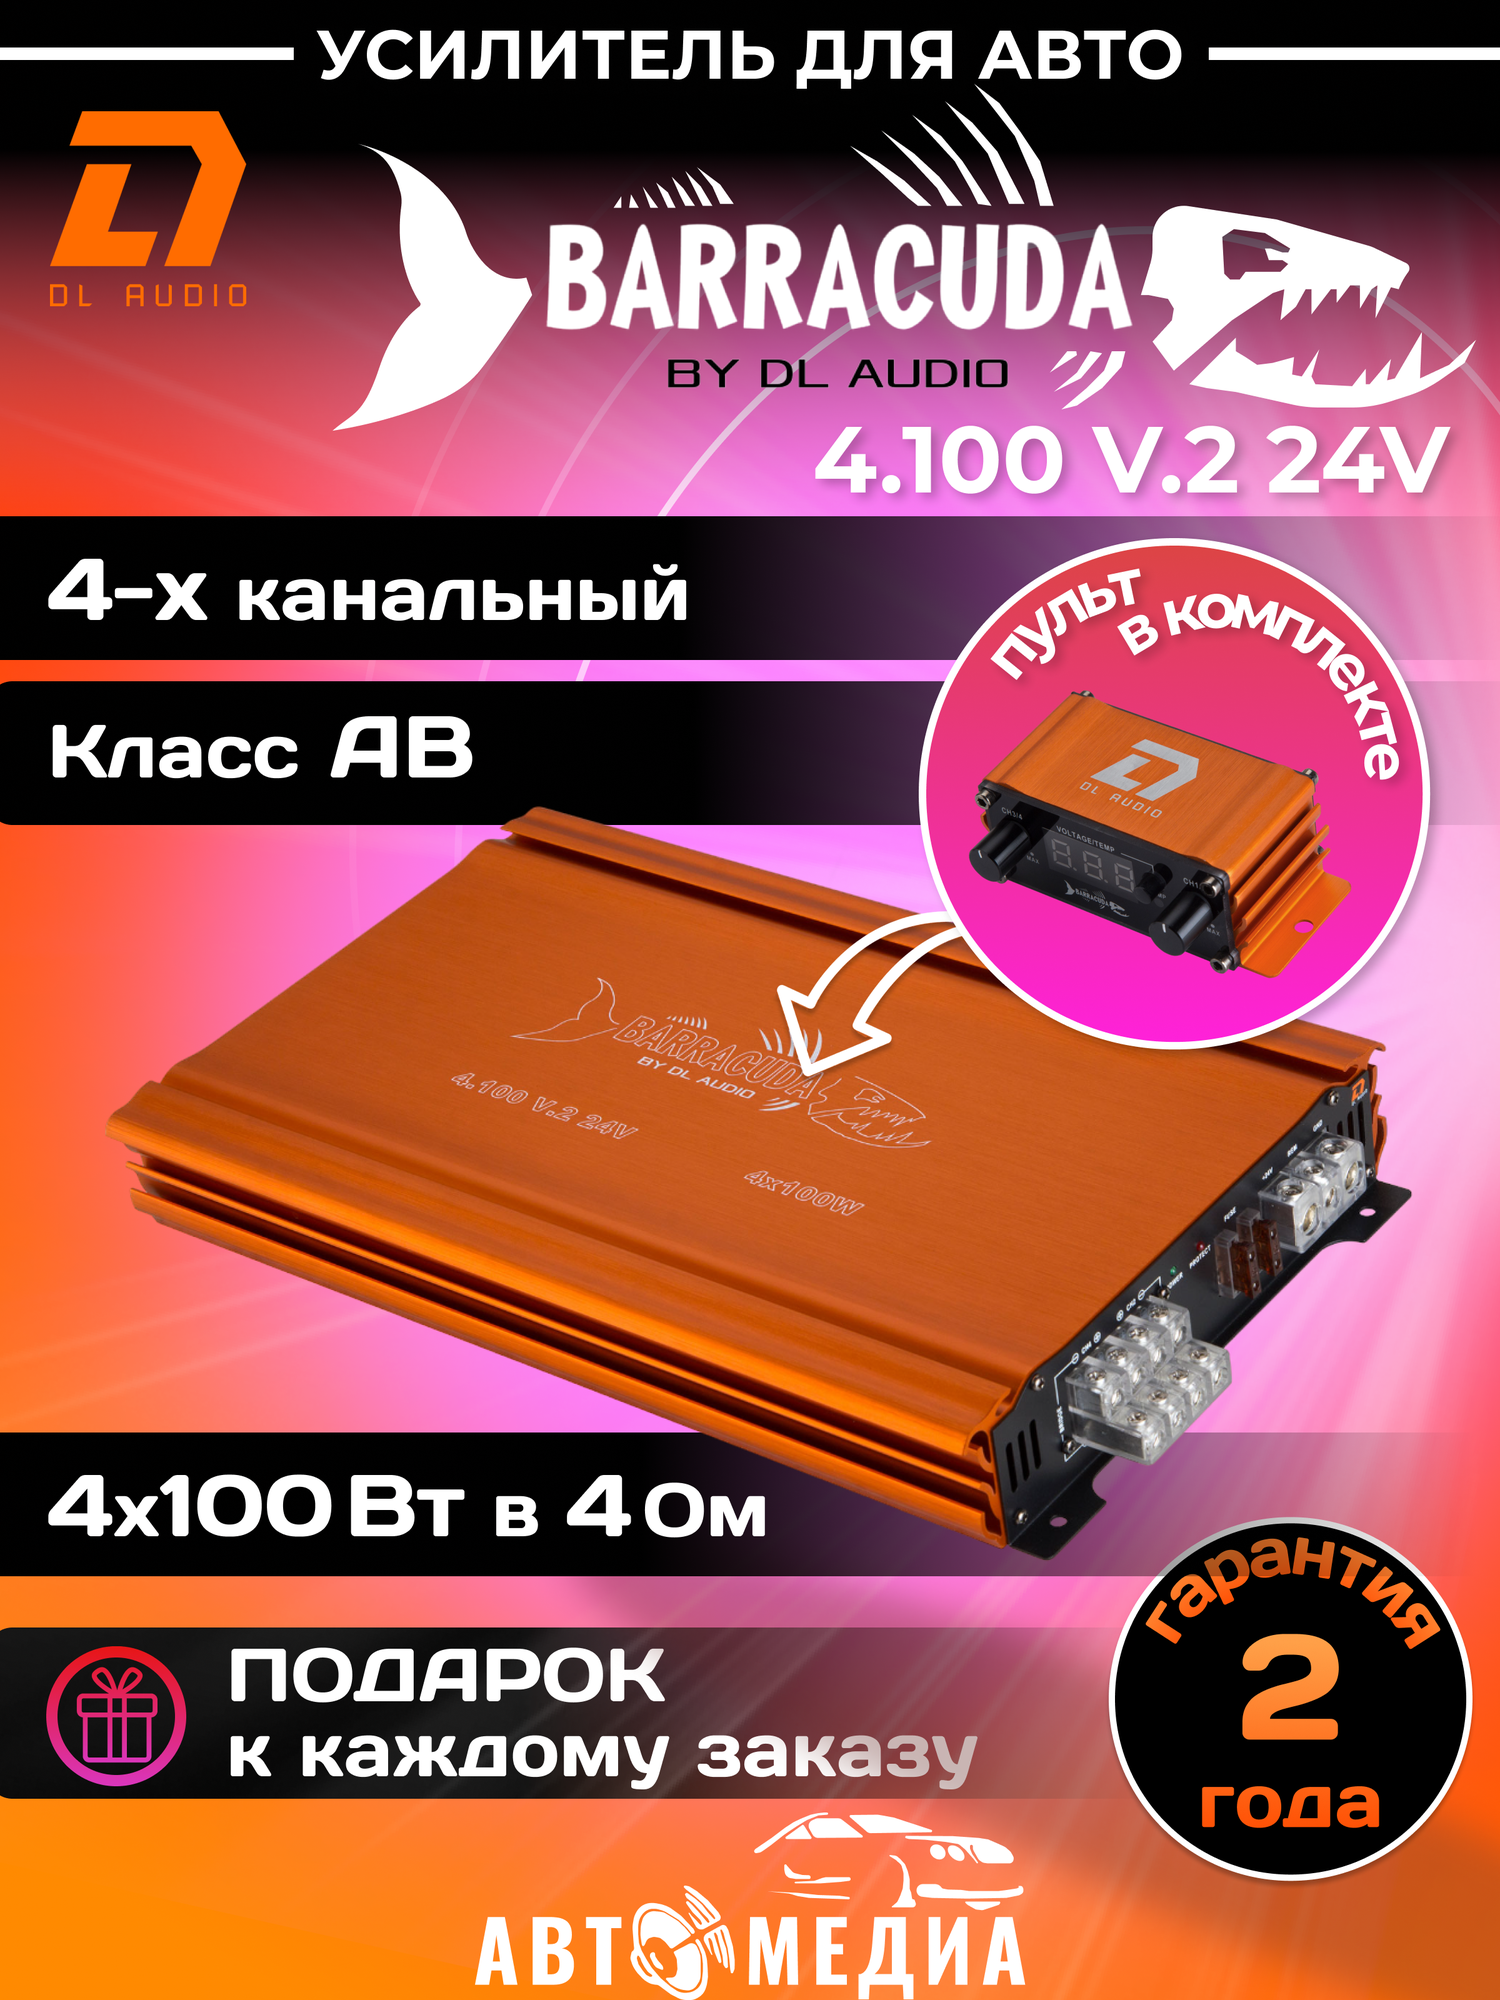 Автомобильный усилитель DL Audio Barracuda 4.100 V.2 24V